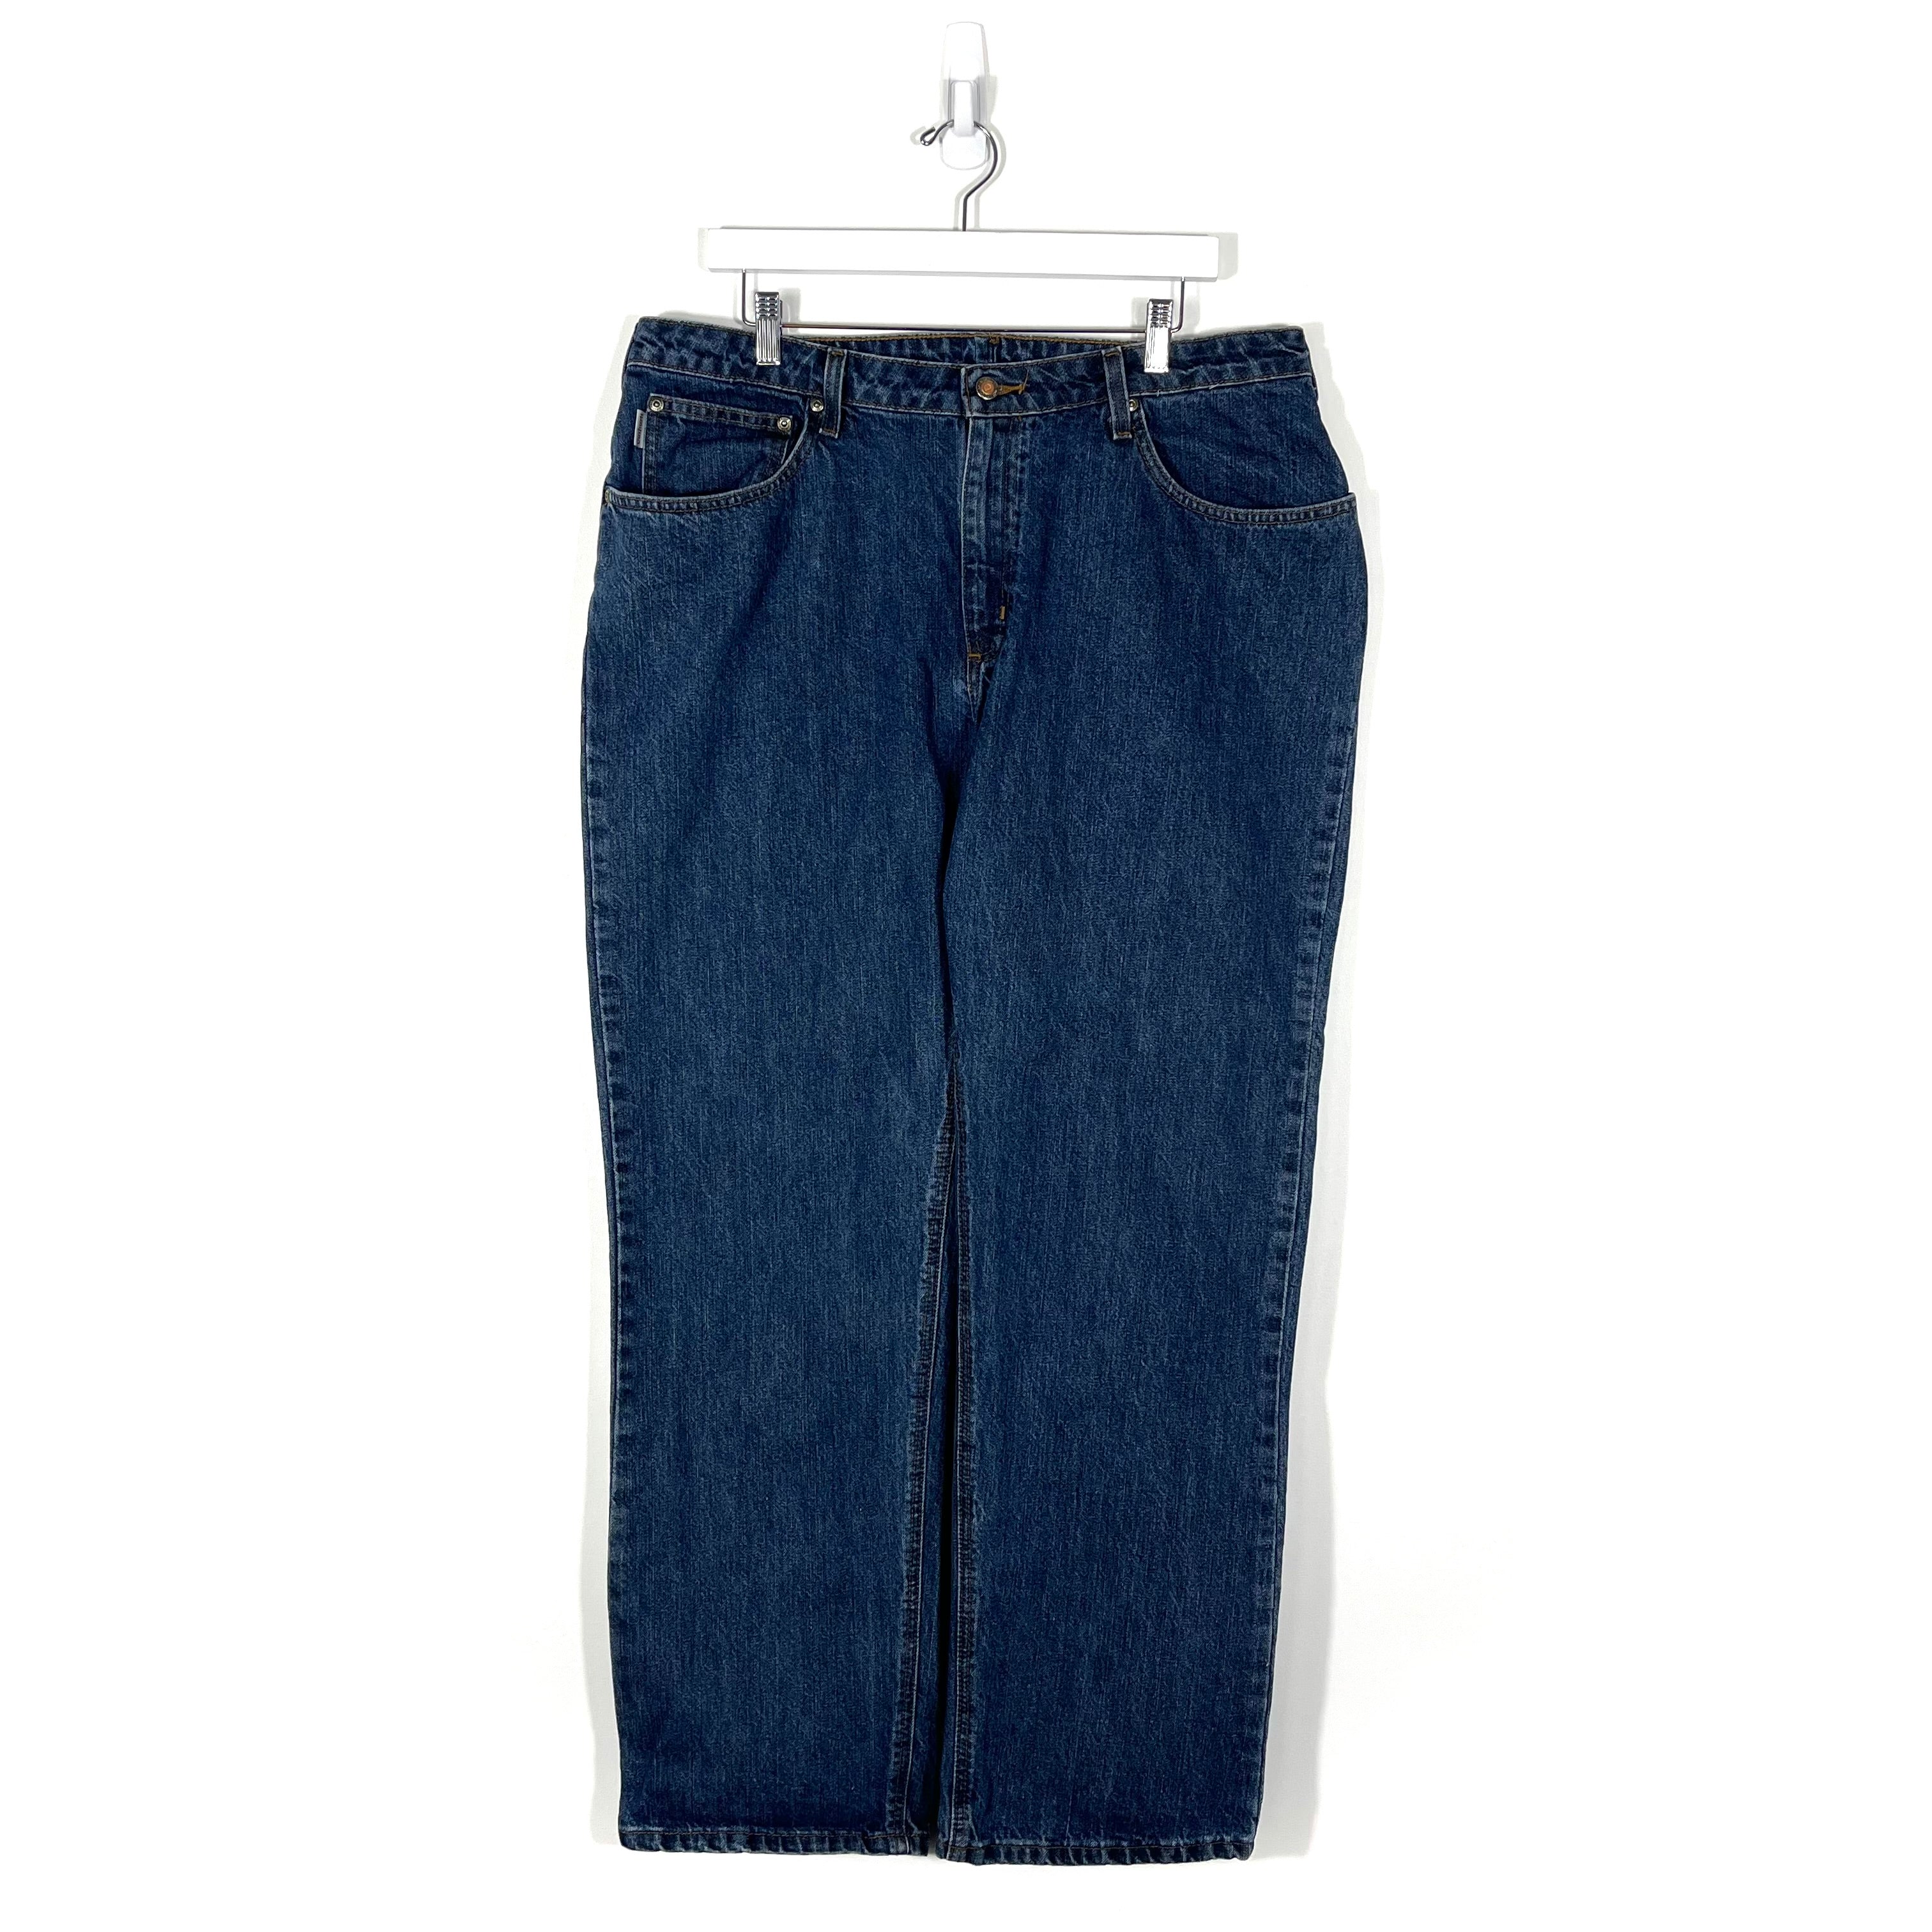 Vintage Carhartt Jeans - Women's 36/32